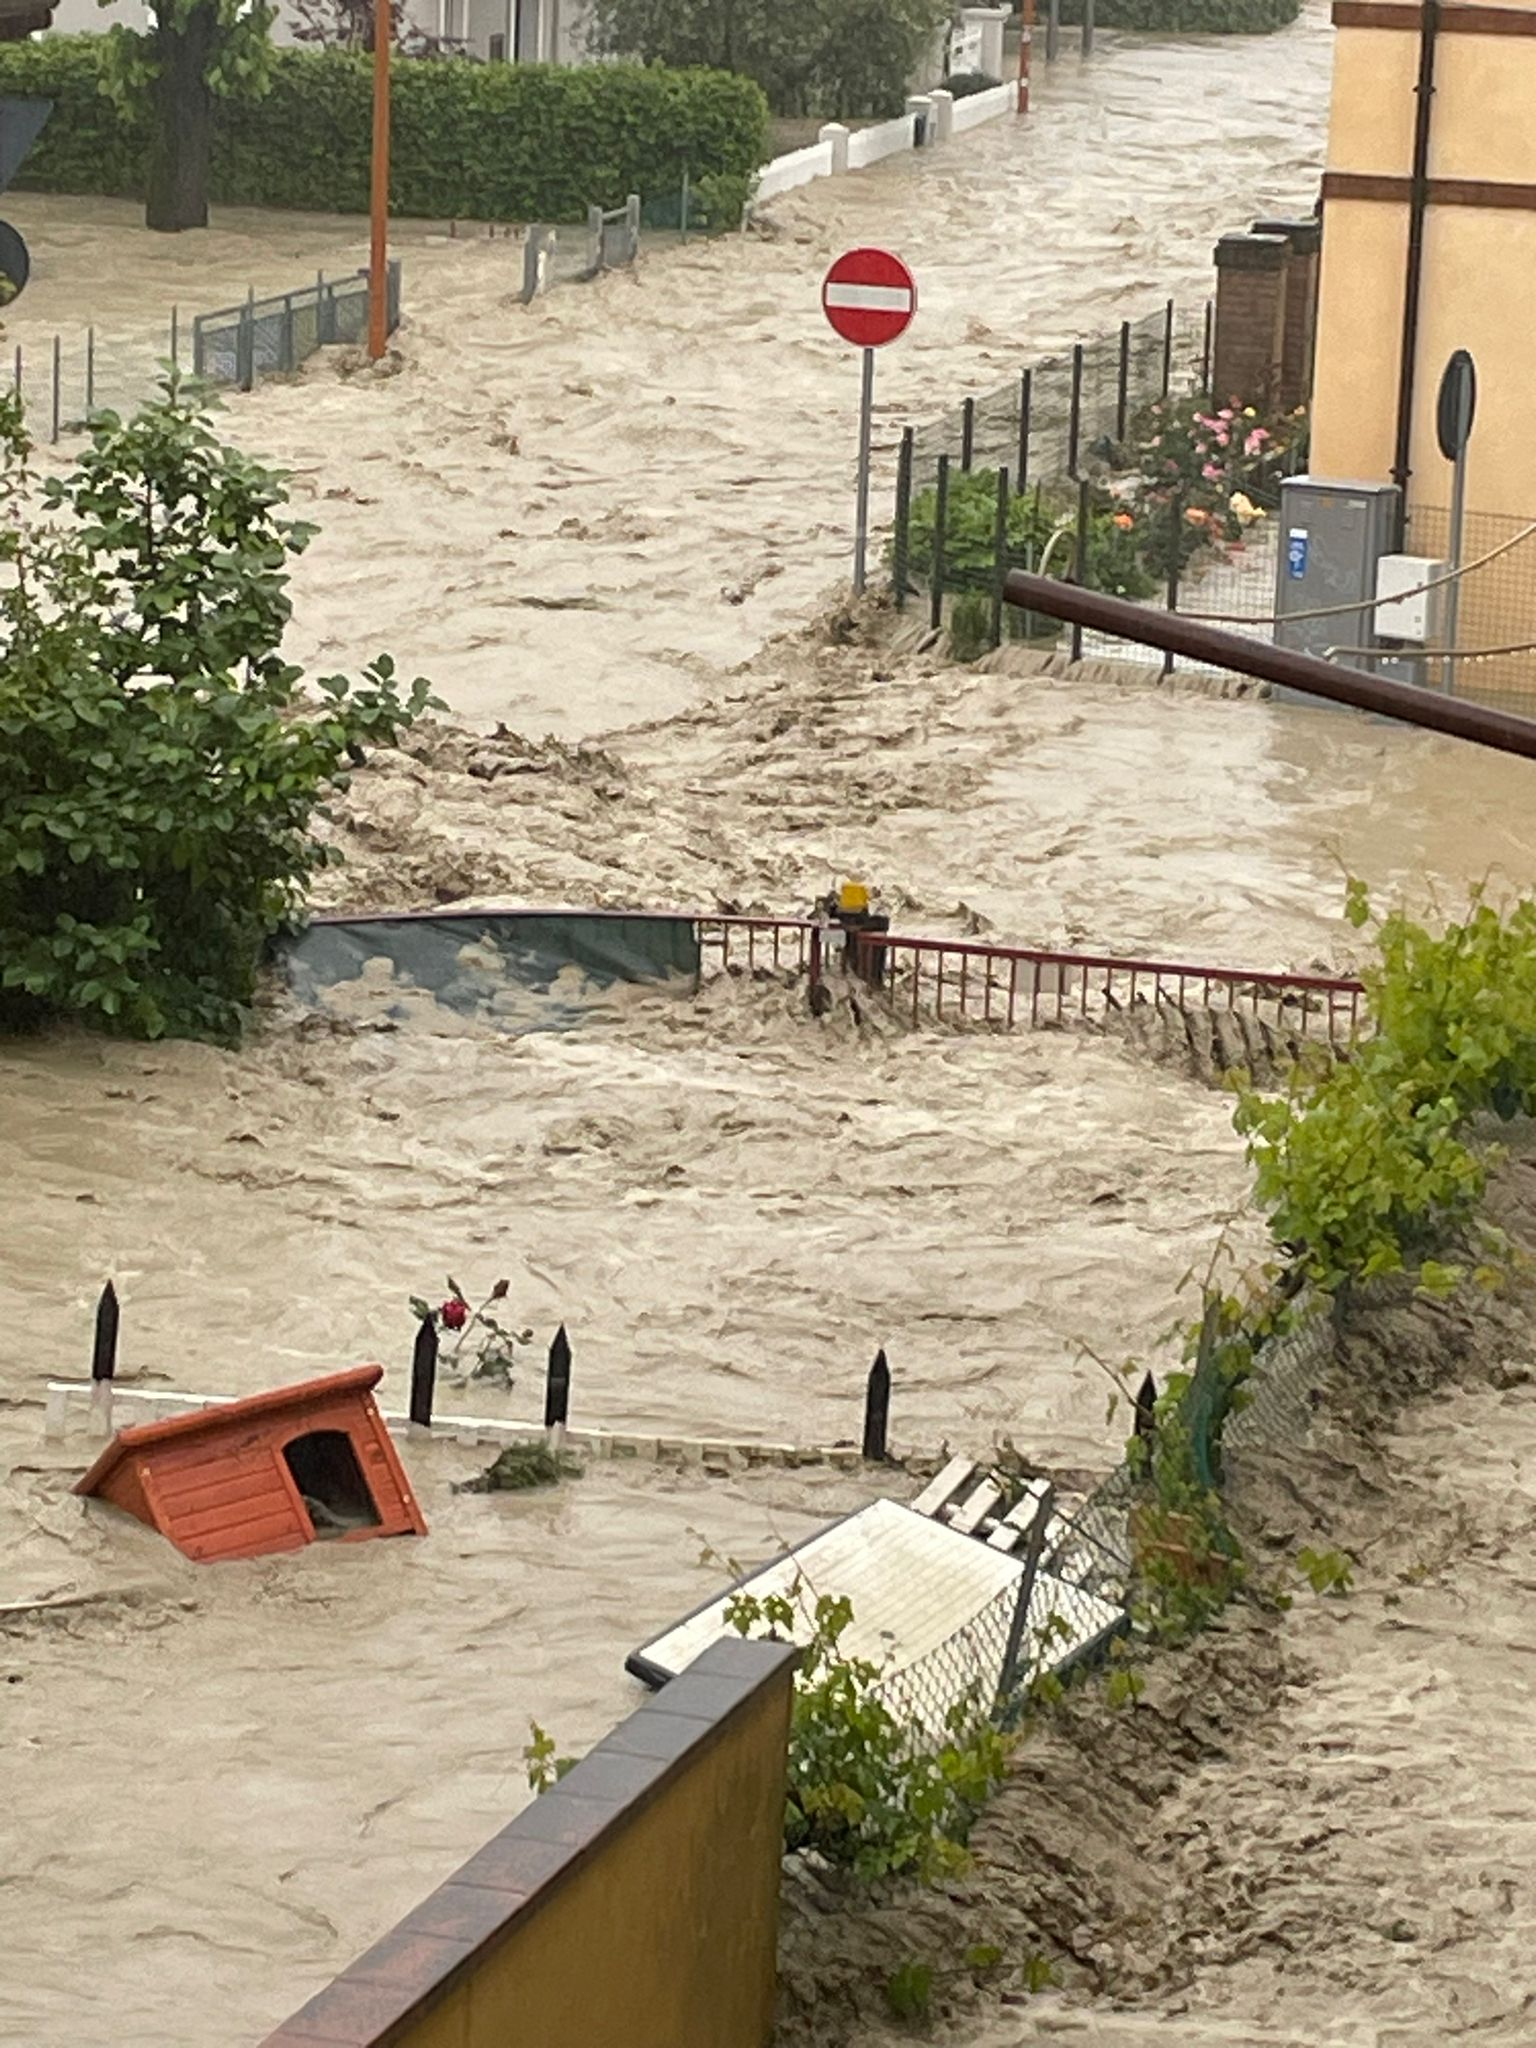 La tempesta in diretta – Il sindaco di Cesena: “Prima salviamo le vite”